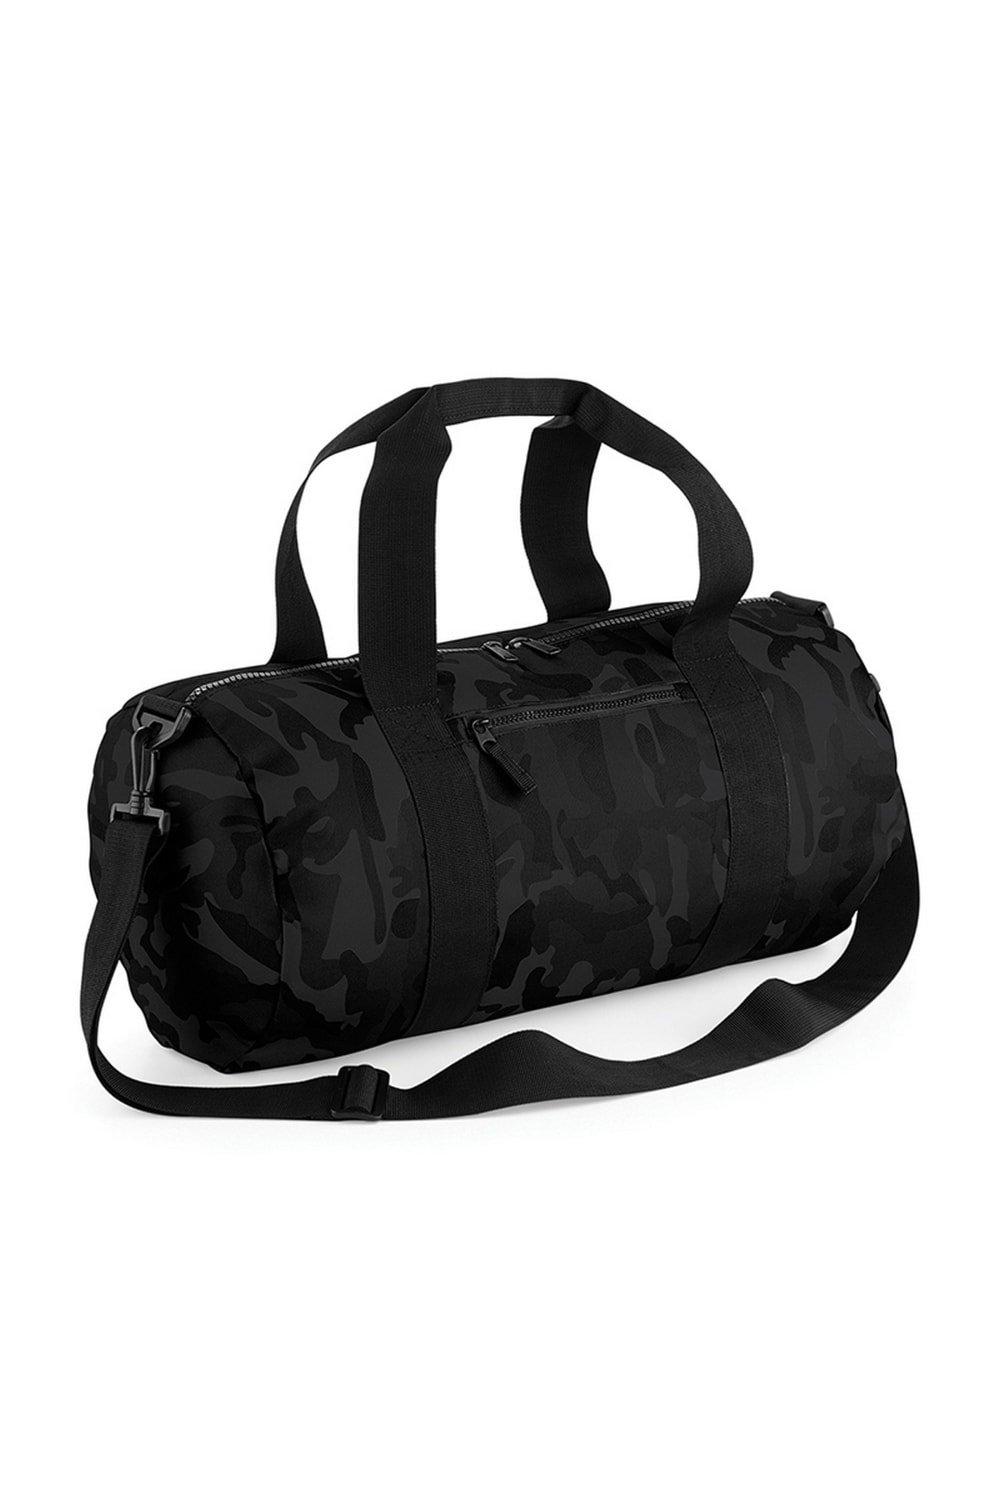 Камуфляжная бочка/спортивная сумка (20 литров) Bagbase, черный домик jerrik 50 x 25 x 33 см